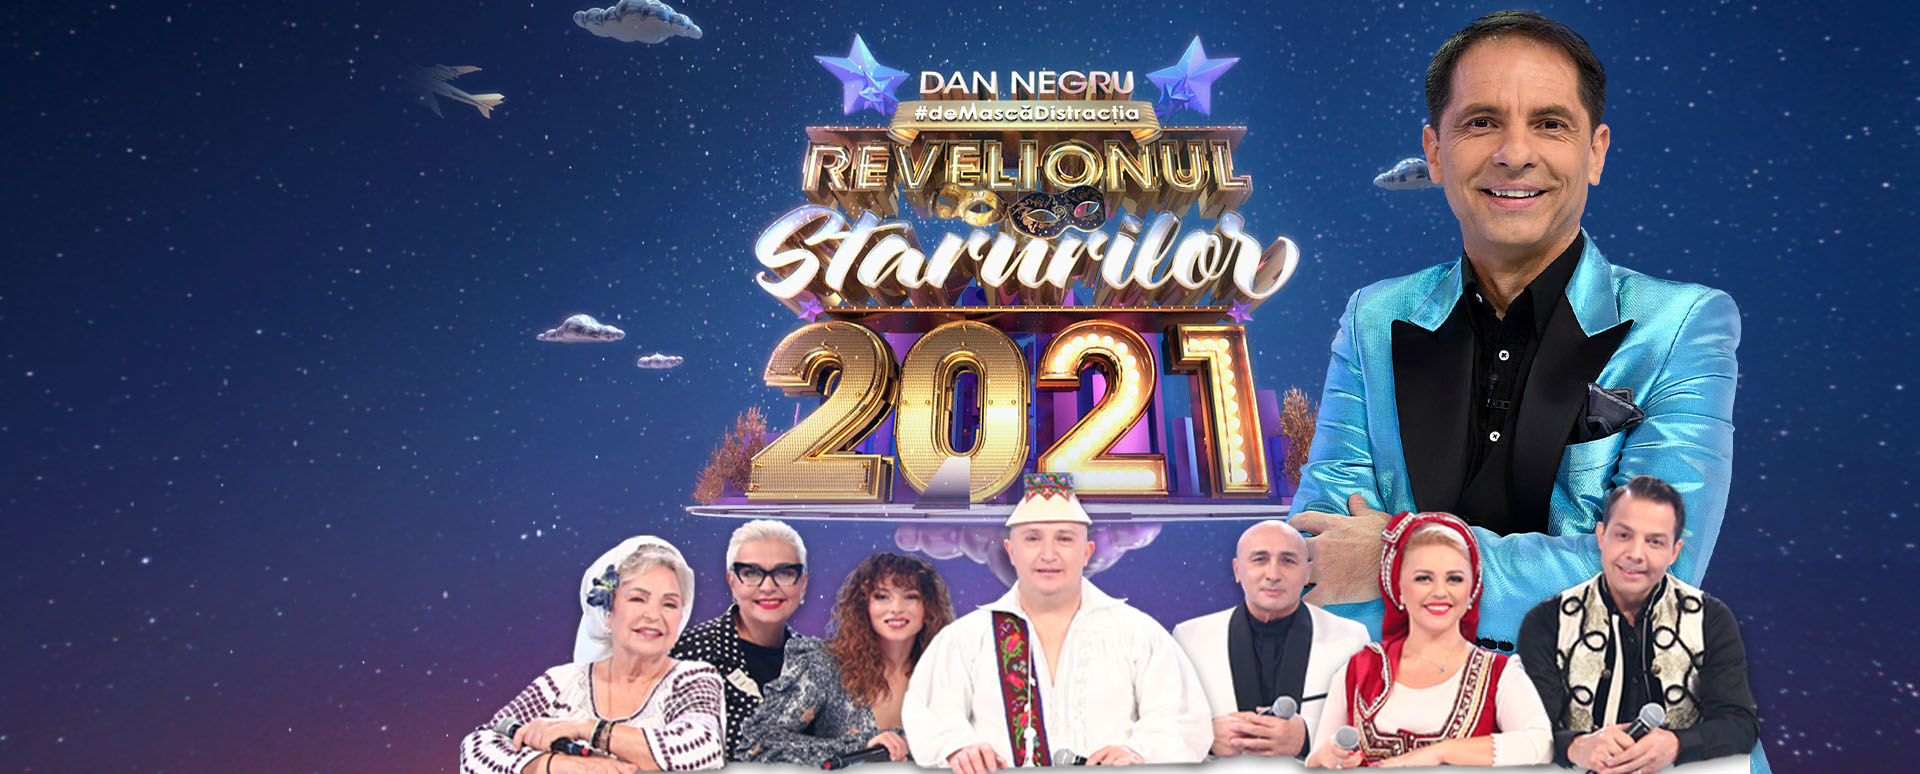 Revelionul Starurilor 2021